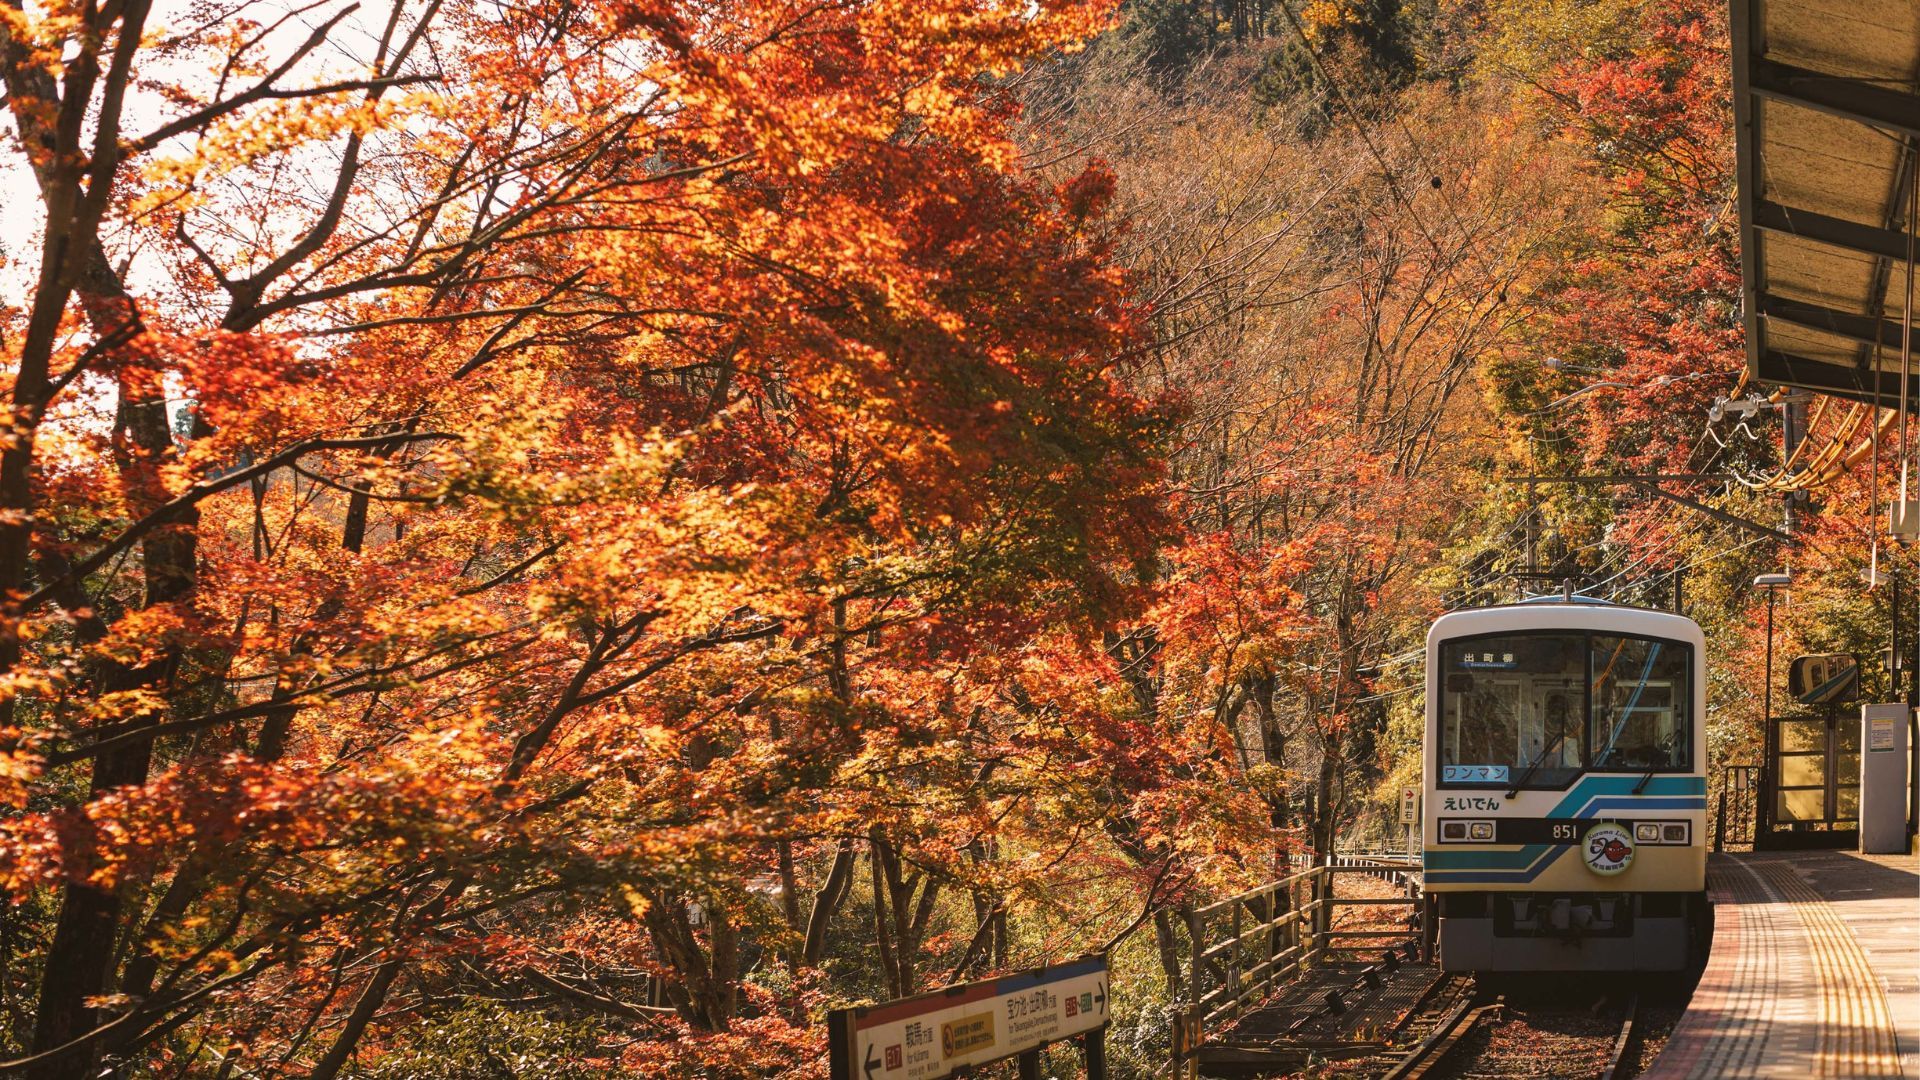 Autumn season in Kyoto